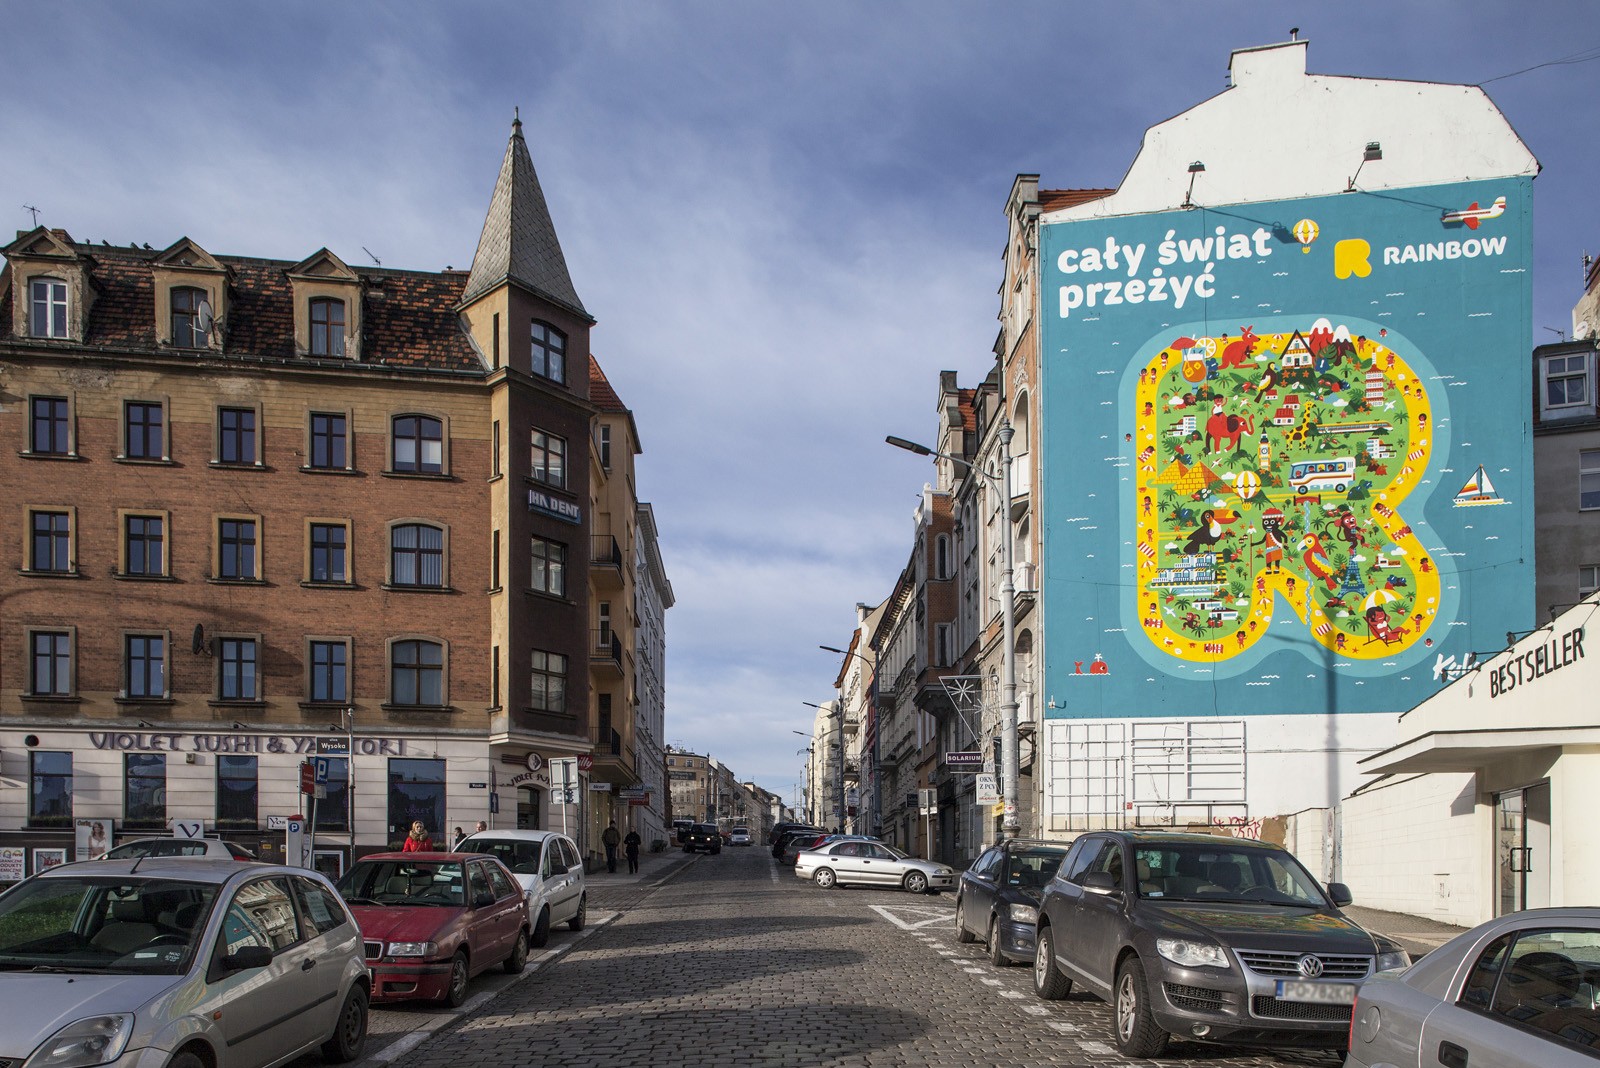 Mural reklamowy Rainbow w Poznaniu | Kampania dla biura podróży Rainbow | Portfolio